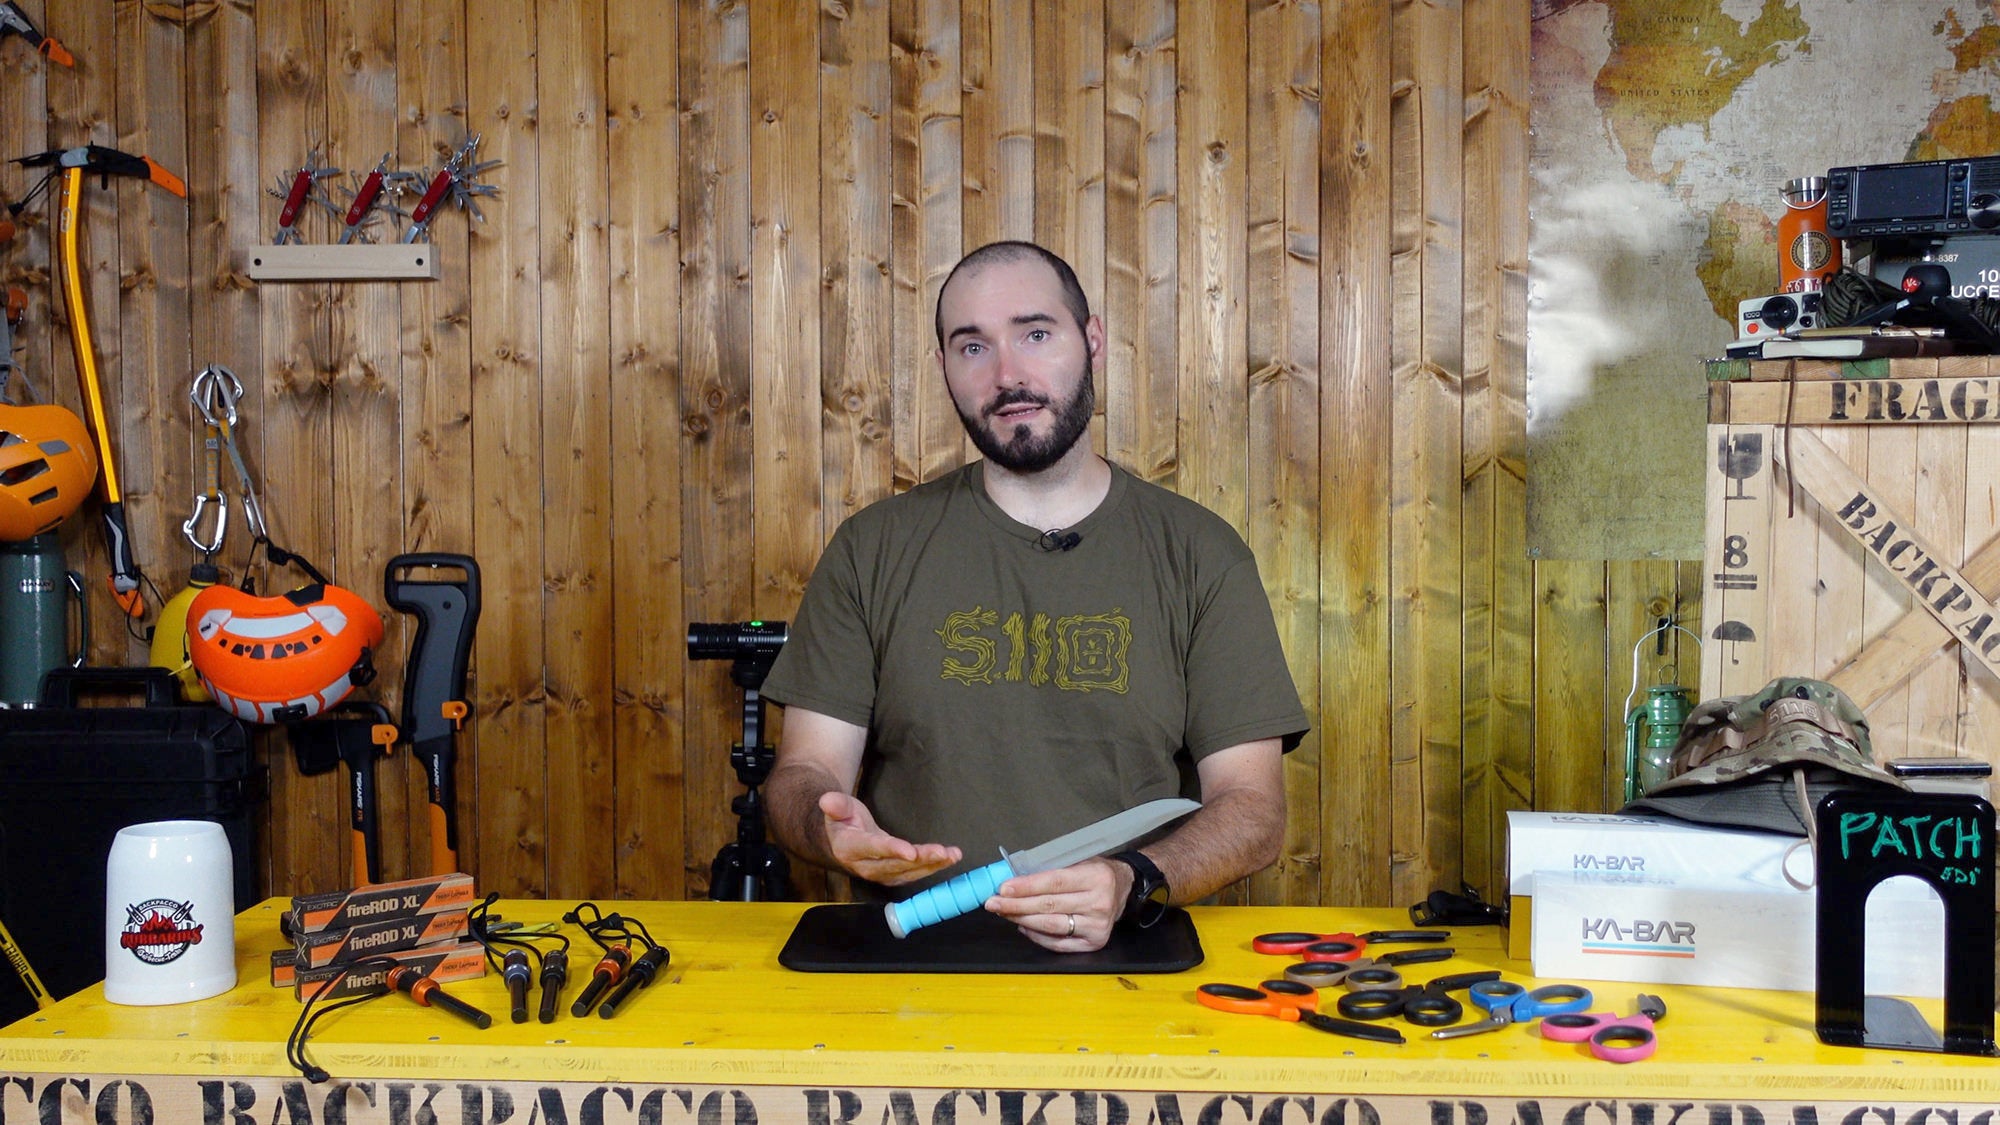 COPERTINA DEL VIDEO DOVE PAOLO DI BACKPACCO SPIEGA IL KA-BAR 1313SF SPACE FORCE